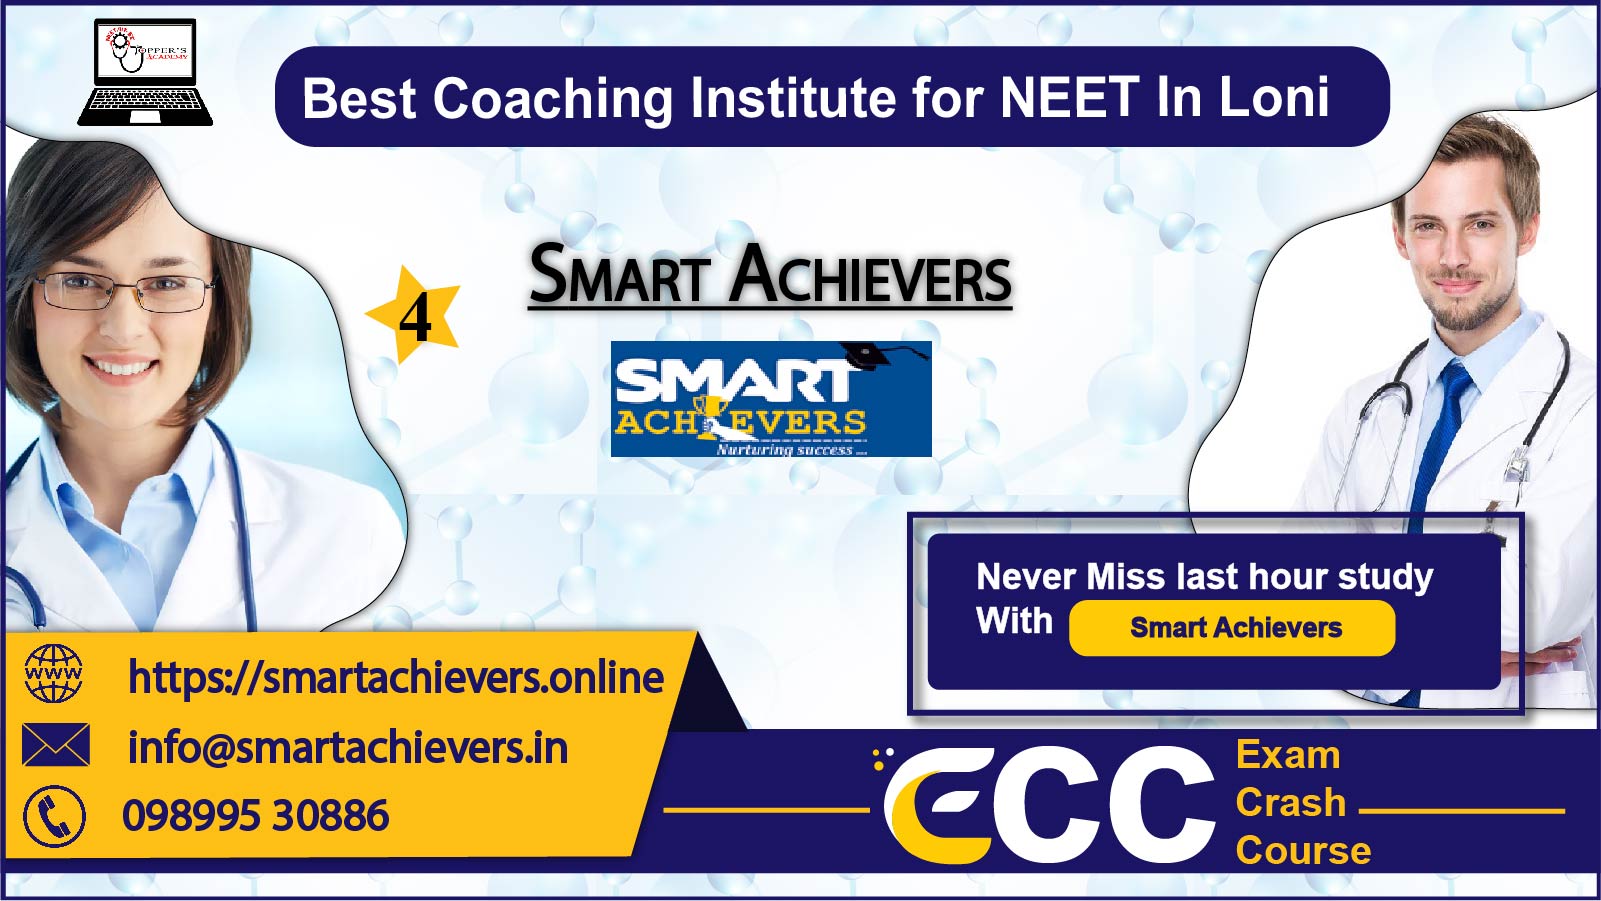 Smart Achievers NEET Coaching in Loni